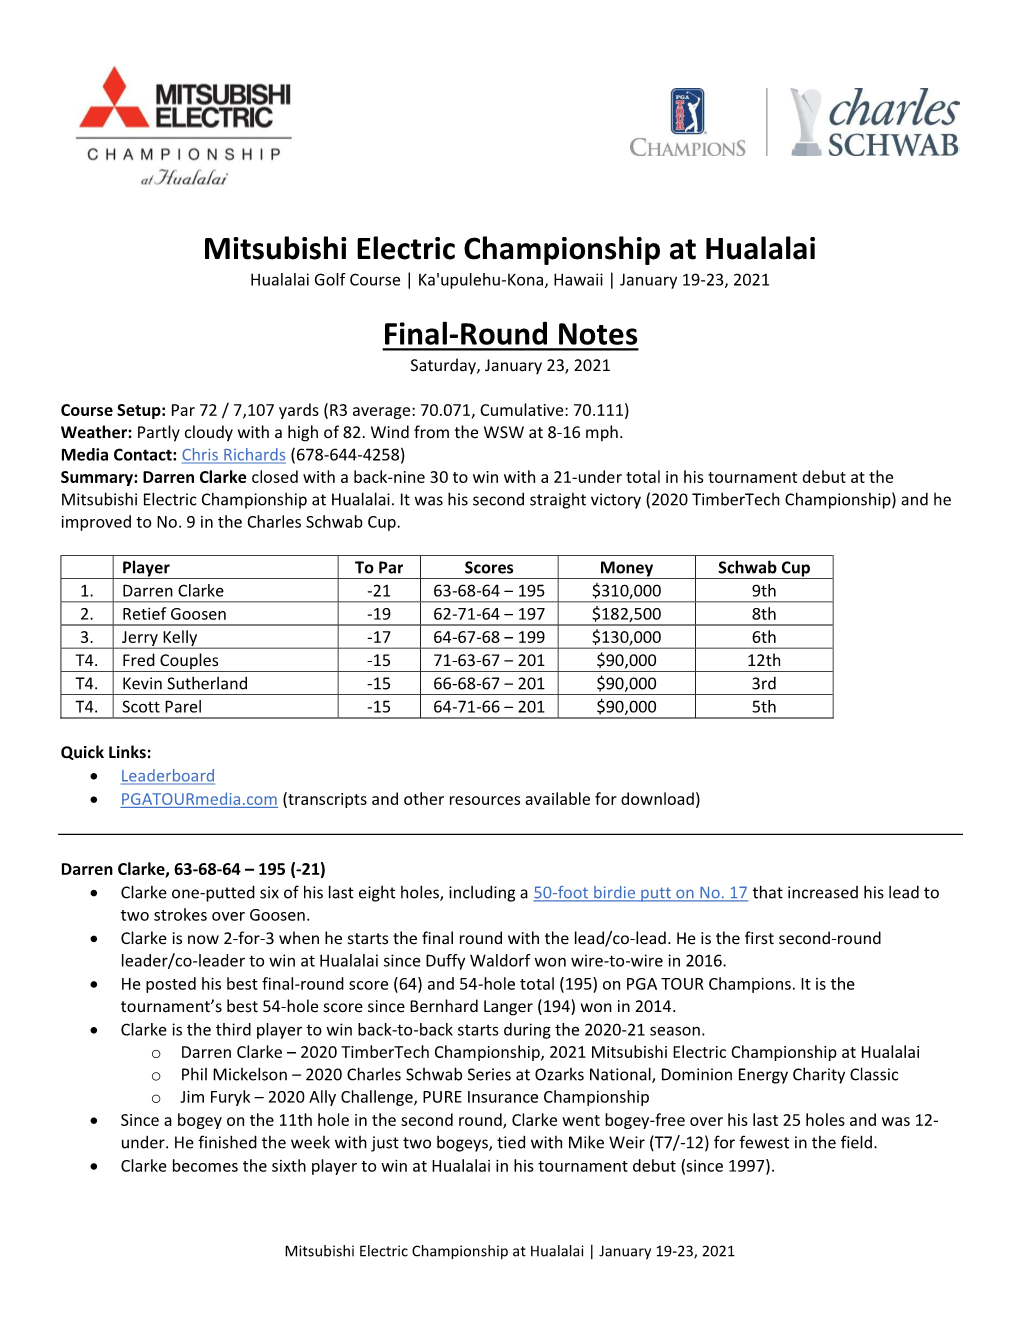 Mitsubishi Electric Championship at Hualalai Final-Round Notes